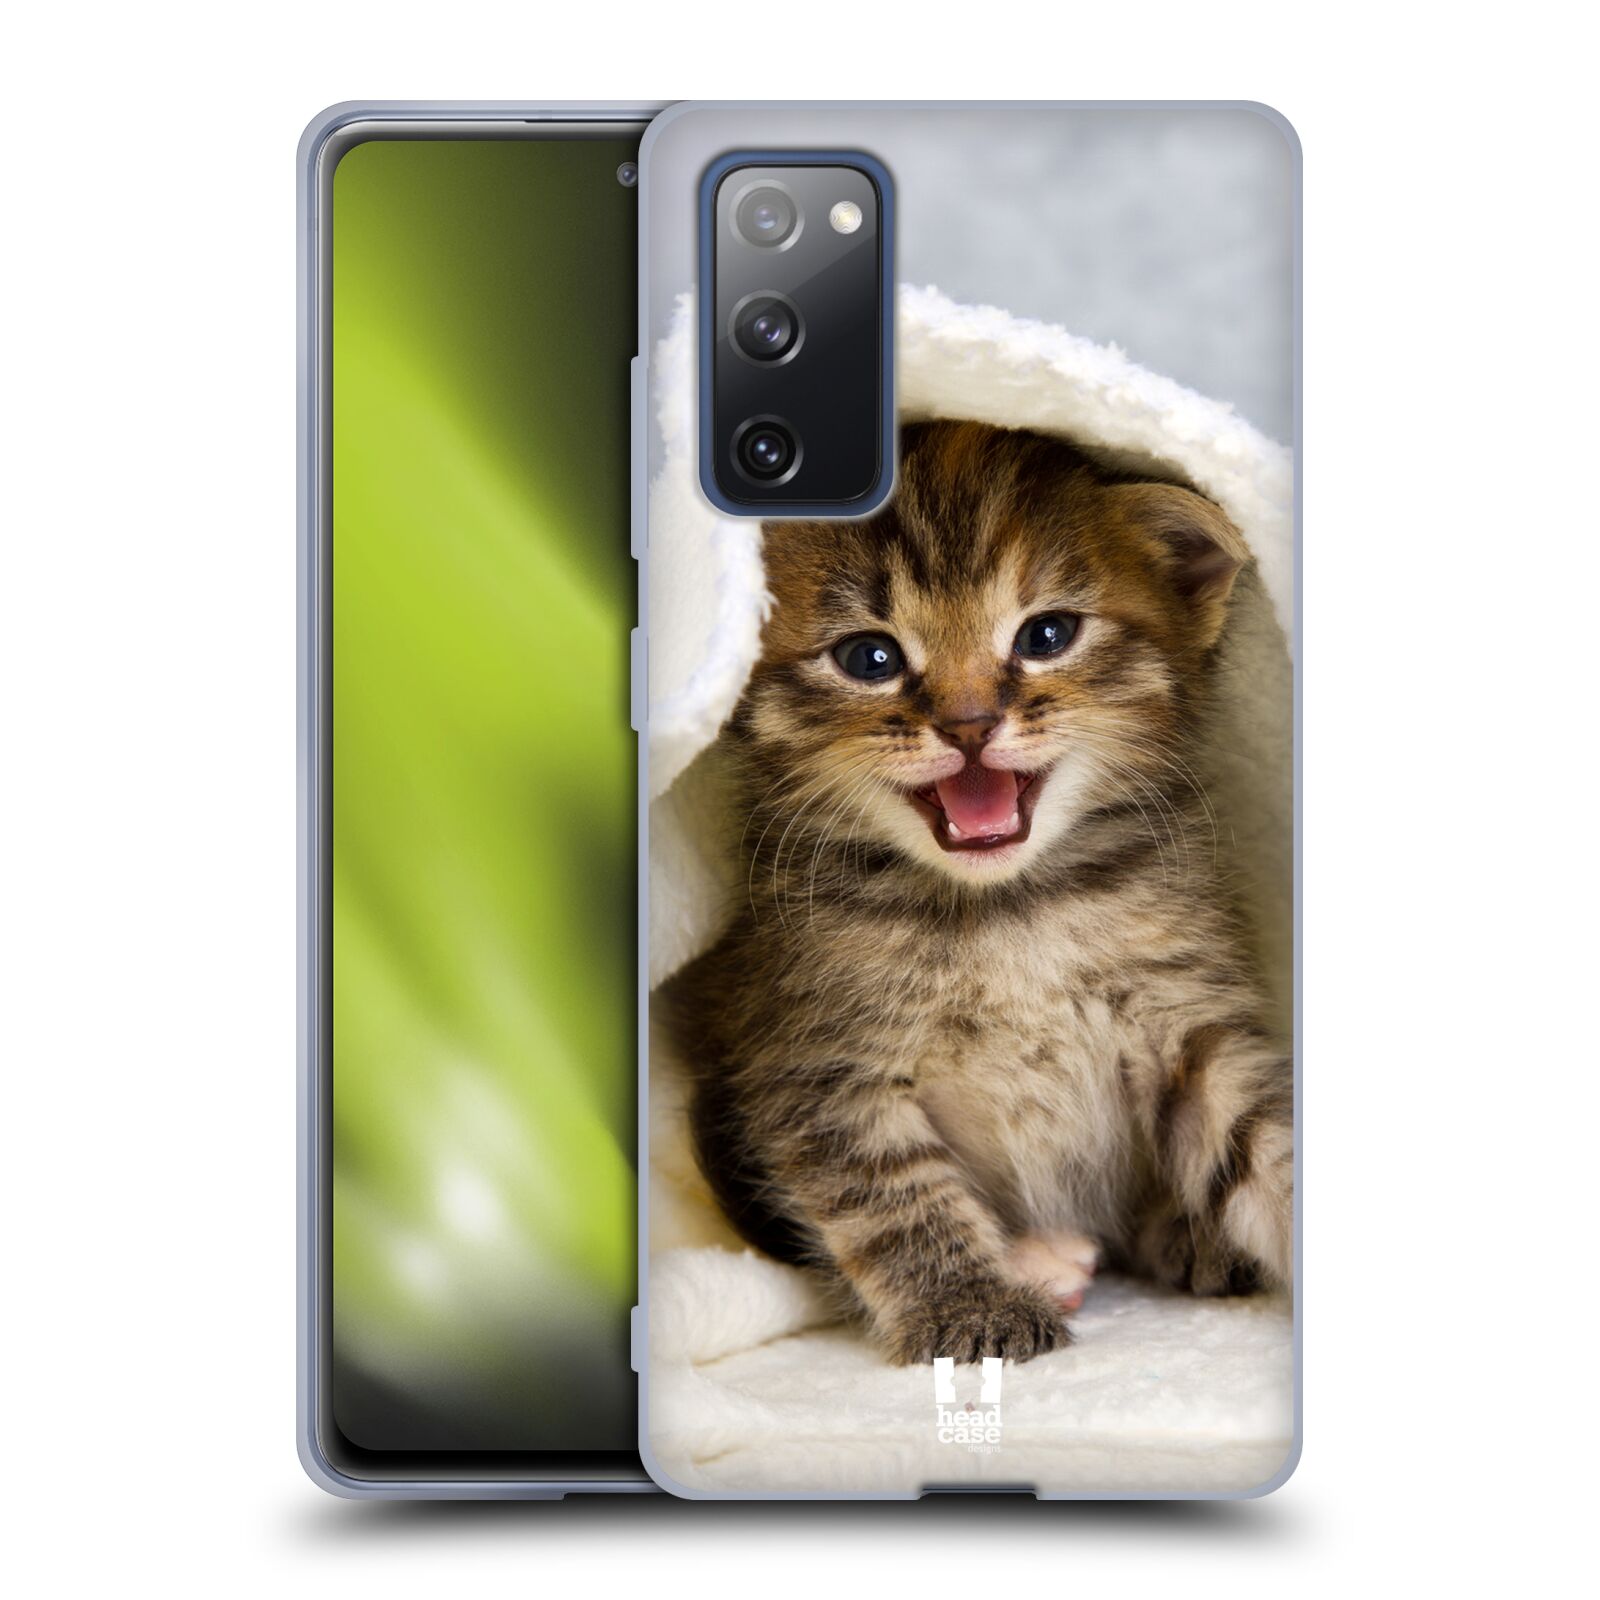 Plastový obal HEAD CASE na mobil Samsung Galaxy S20 FE / S20 FE 5G vzor Kočičky koťata foto kotě v ručníku